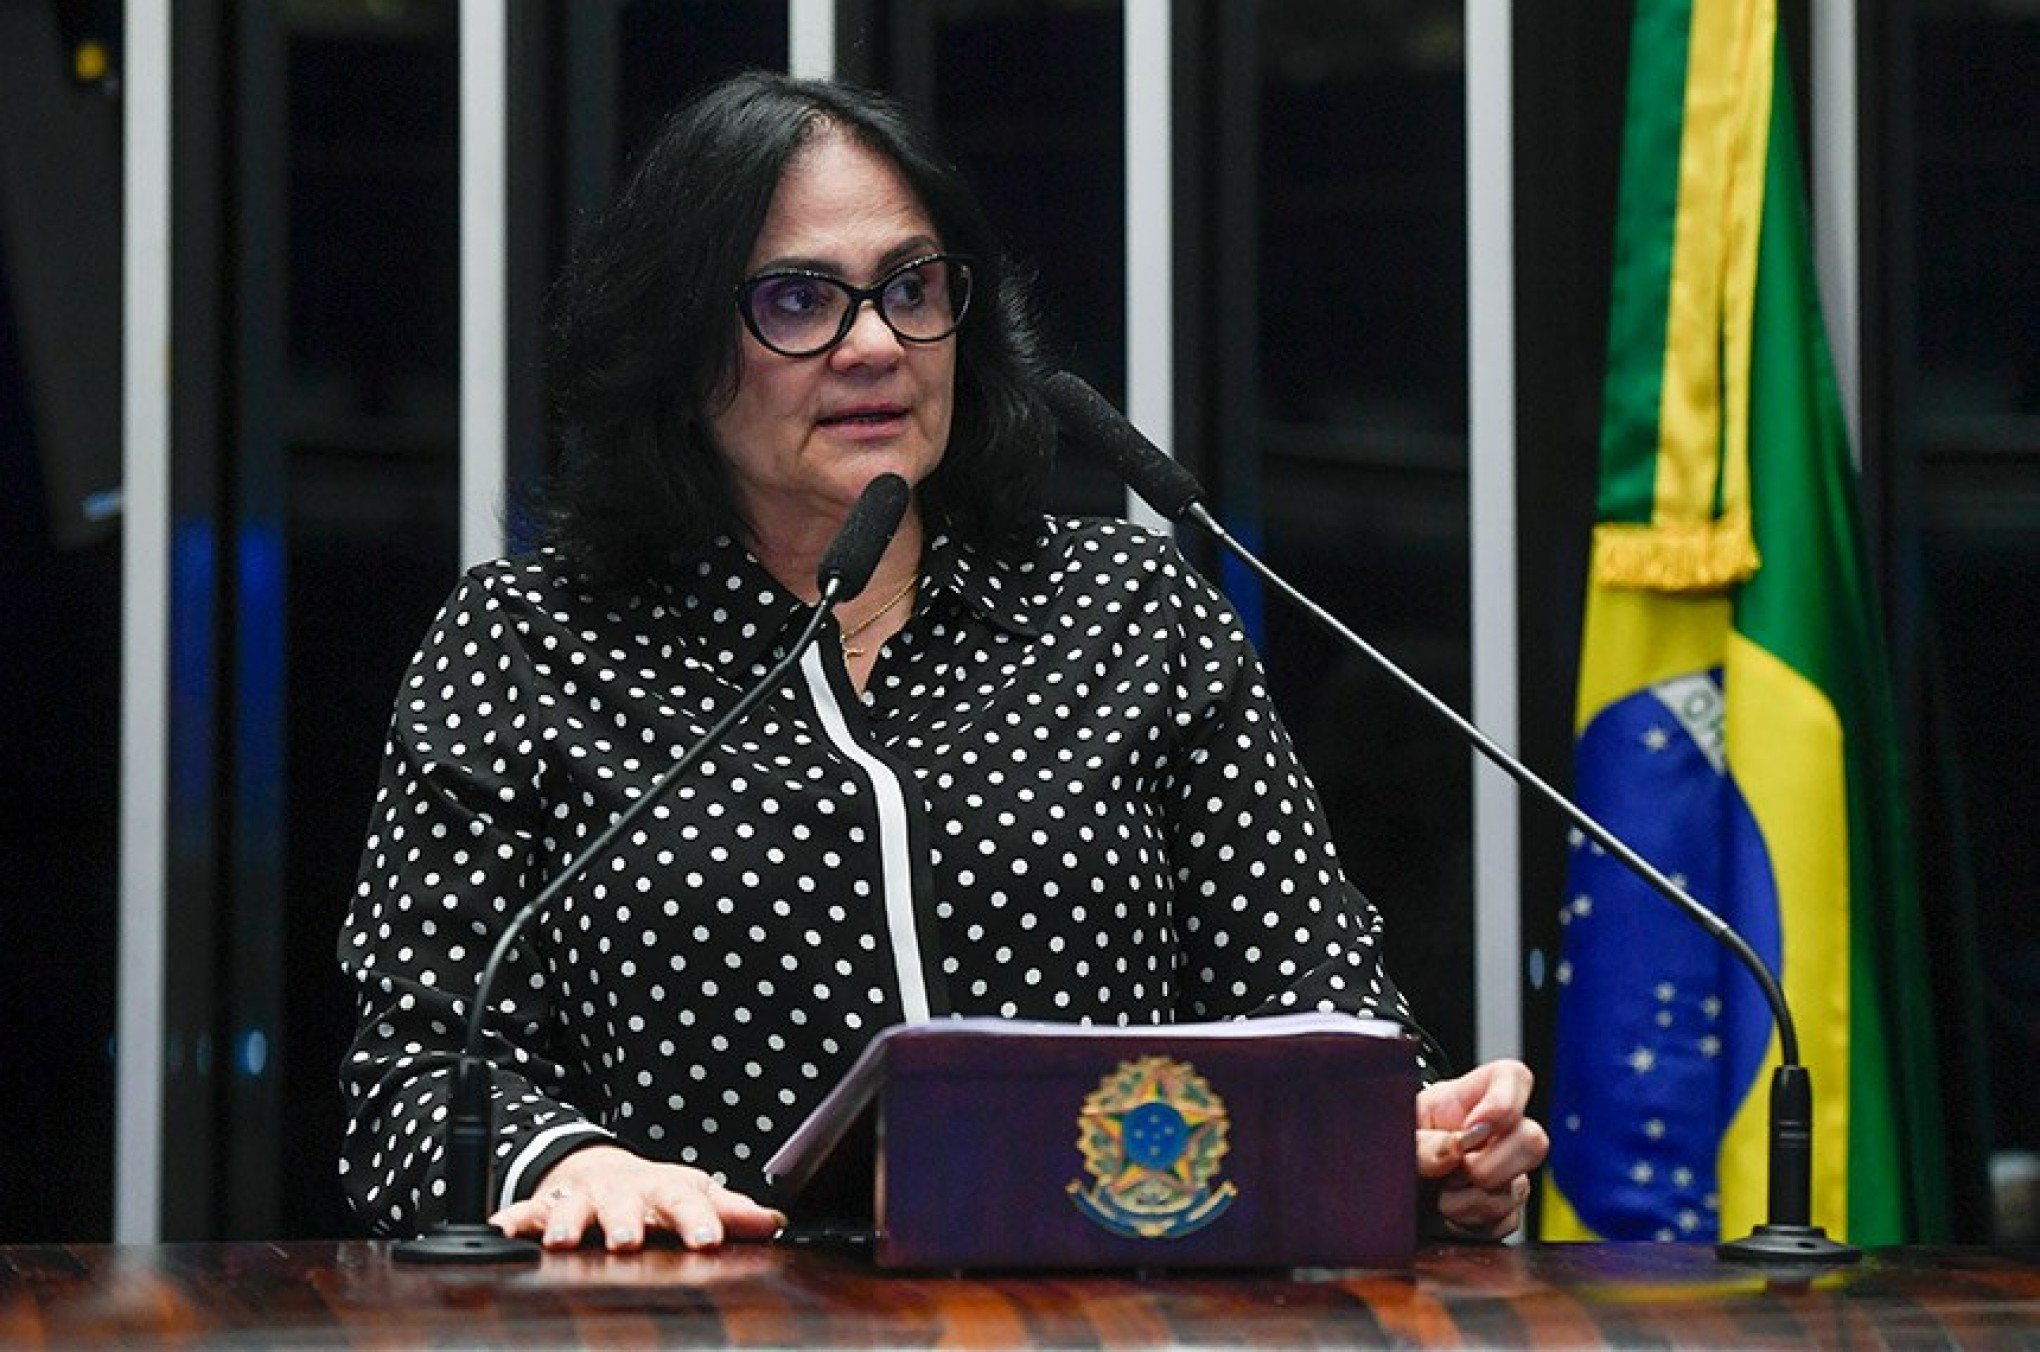 HERPES-ZÓSTER: Senadora Damares Alves recebe alta após internação por paralisia facial